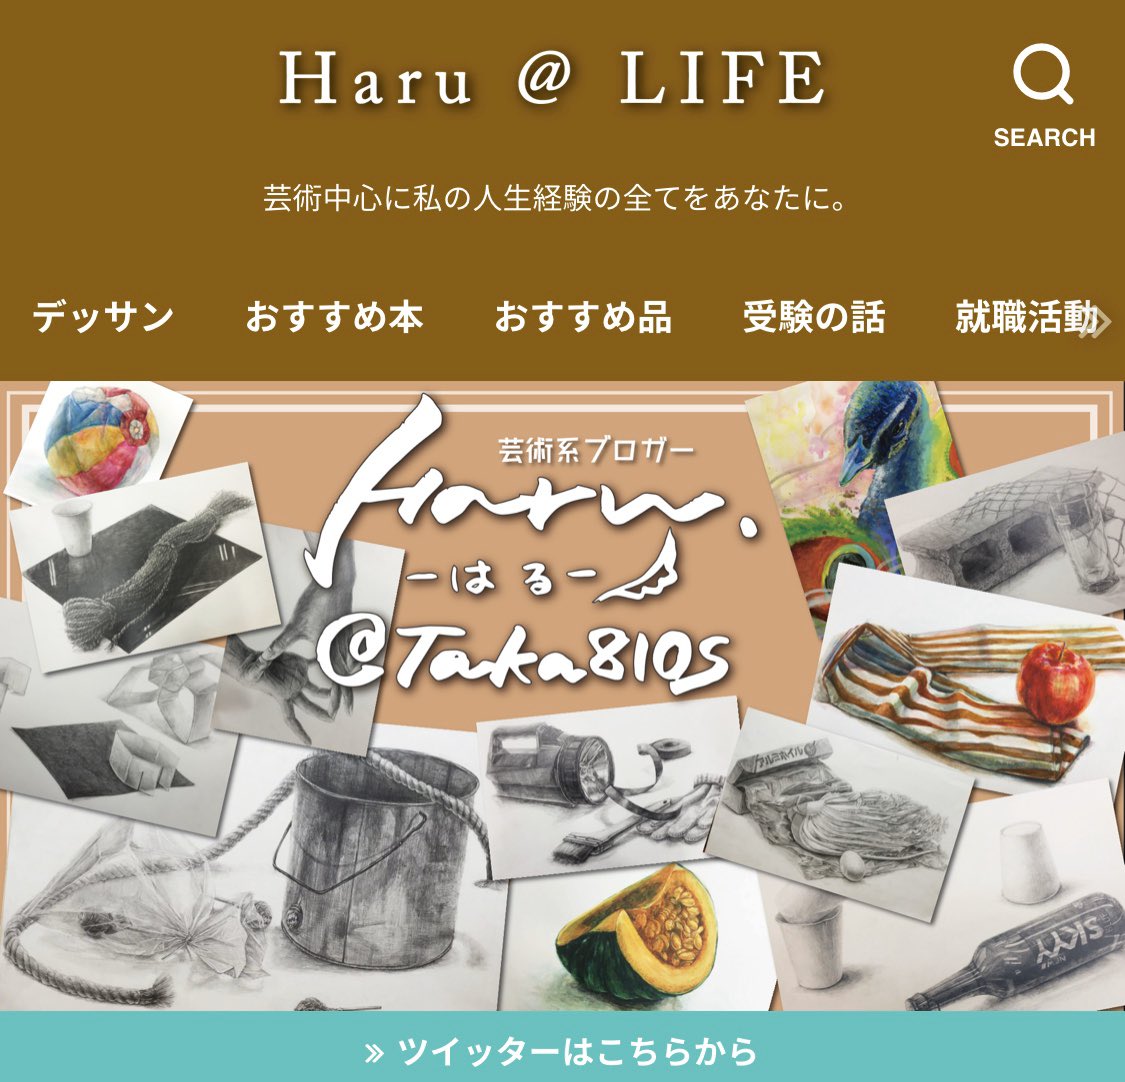 はる 芸術系youtuber 添削お休み中 サイトのトップページデザイン変更 今まで 運営する芸術サイトの名前が Haru Life だったのですが はるアトリエ に変更しました ちょっと大人向けなイメージ 画力上げる情報満載なのでぜひ遊び